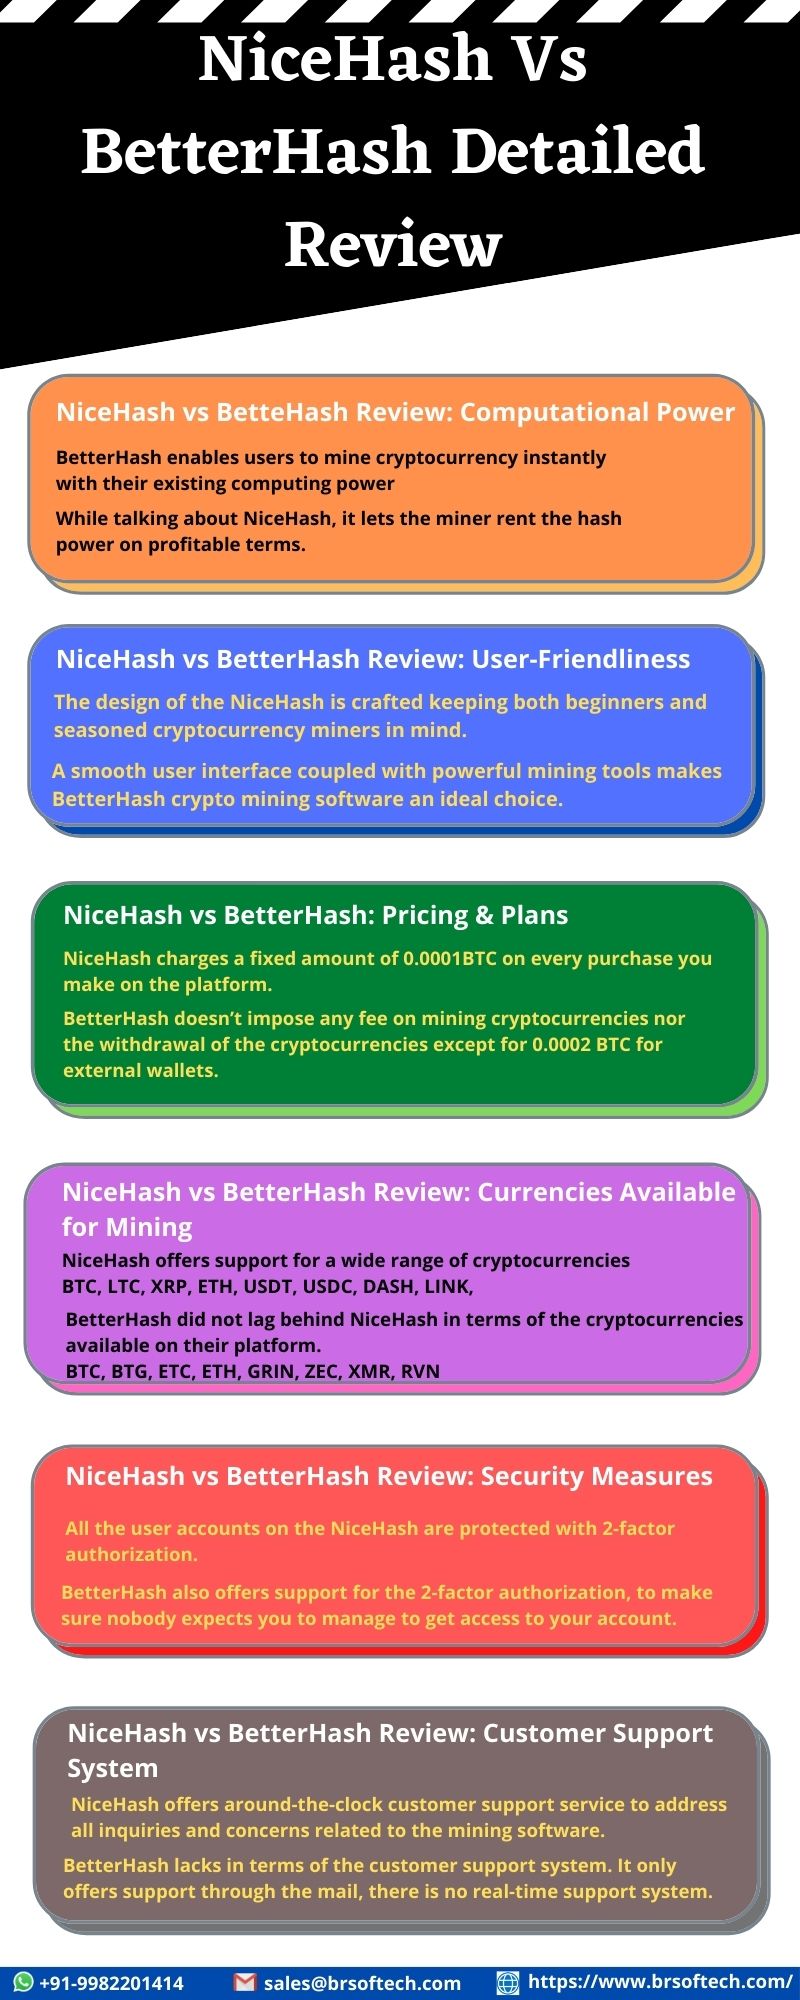 NiceHash Vs BetterHash Detailed Review